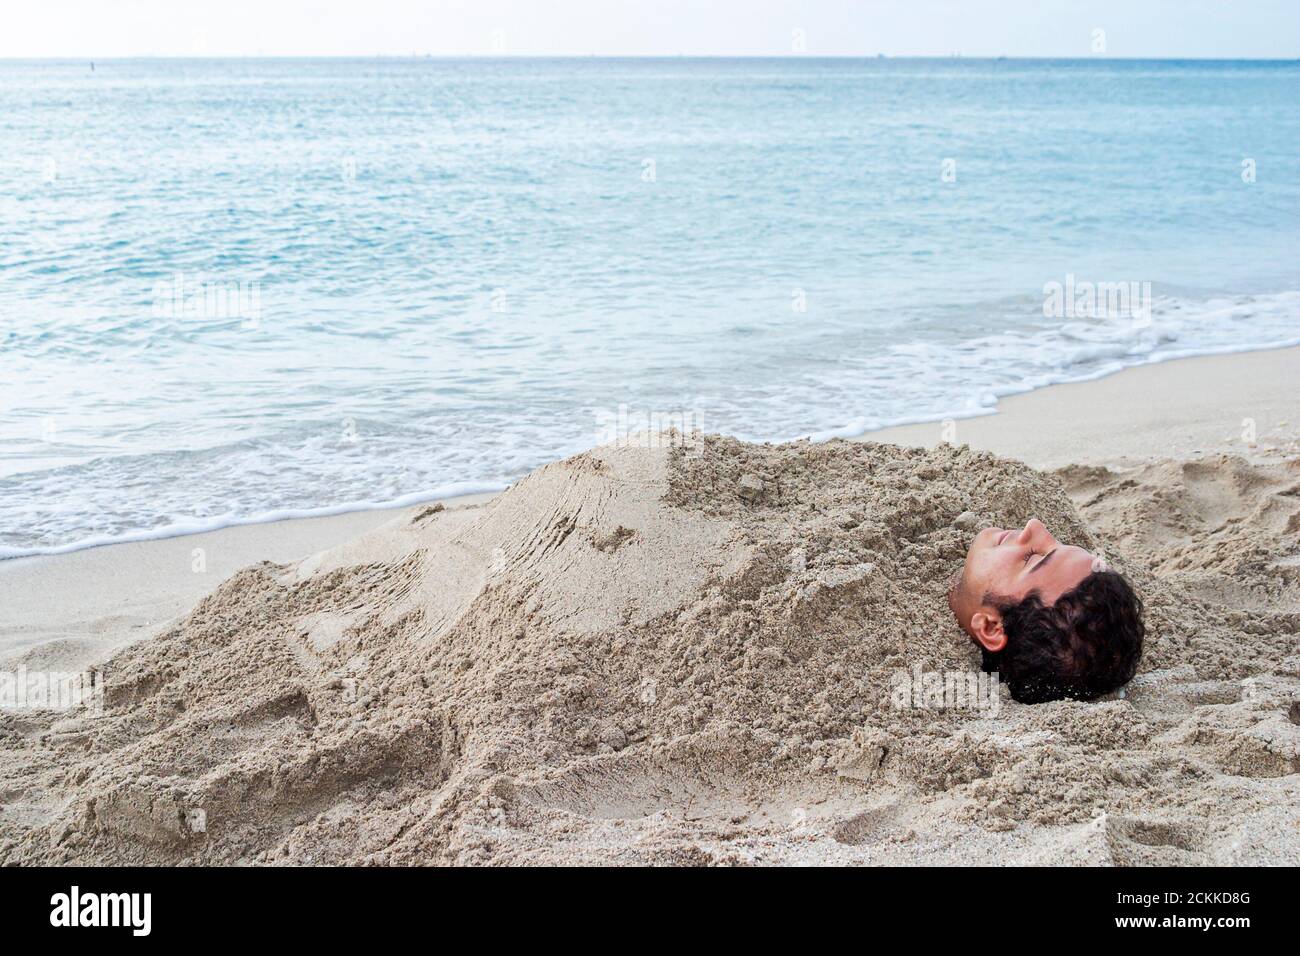 Miami Beach, Florida, Atlantikküste, Küste am Meer, hispanischer Junge, Mann, vergrabener Sand durch Wassersurf, Teenager im Teenageralter Stockfoto